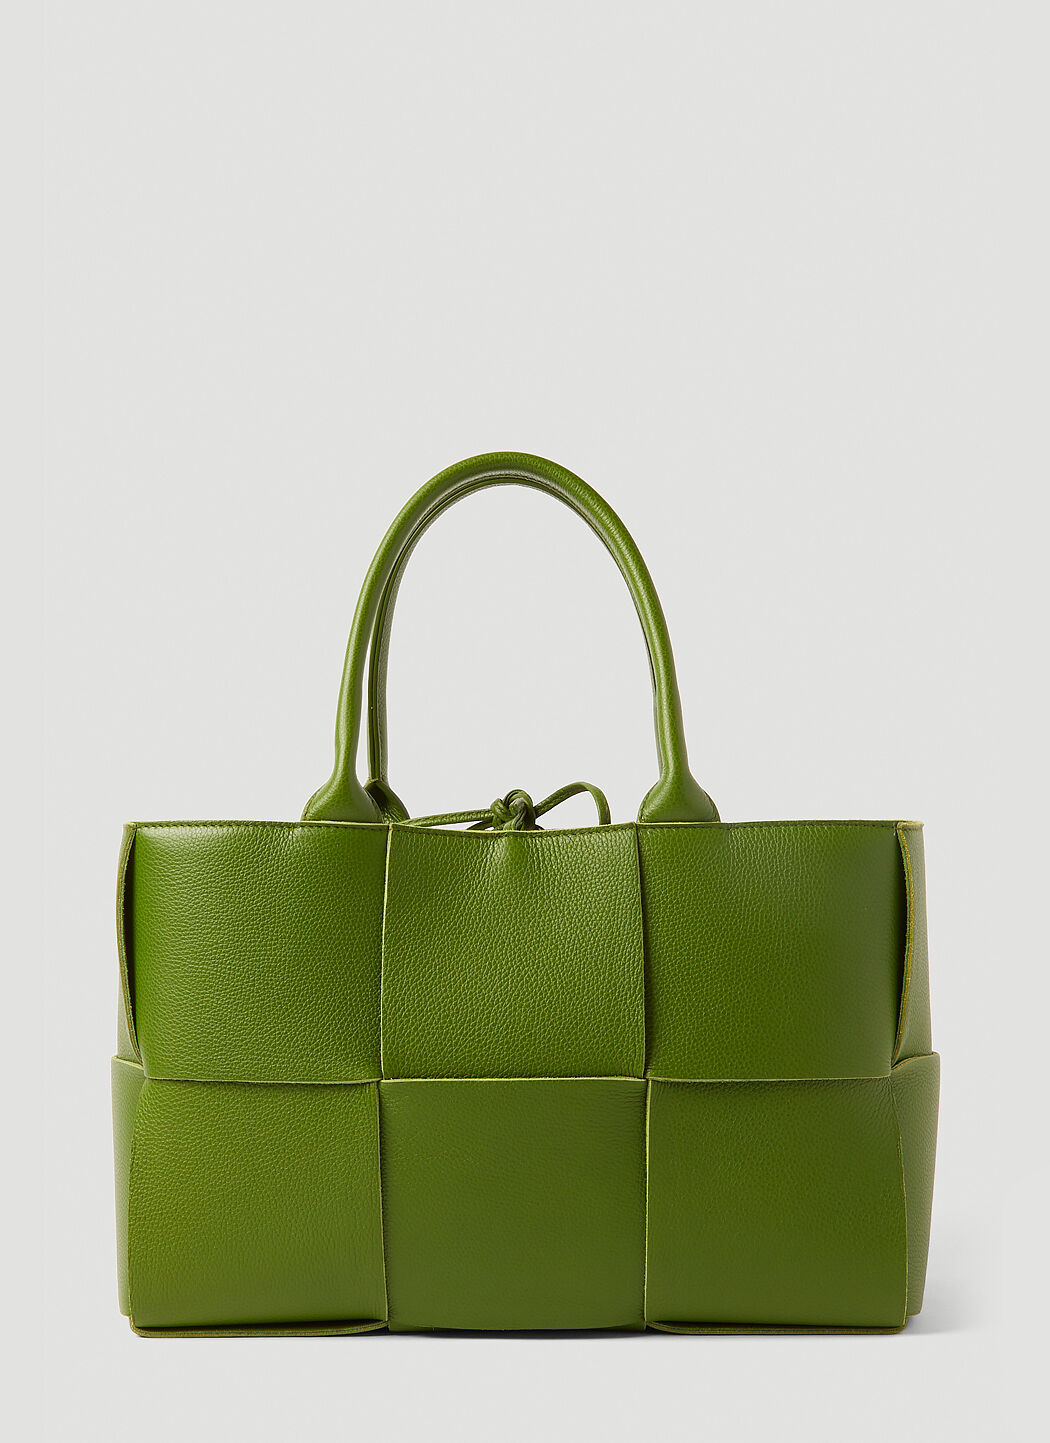 Bottega Veneta Women's Arco Medium Tote Bag in Green | LN-CC®